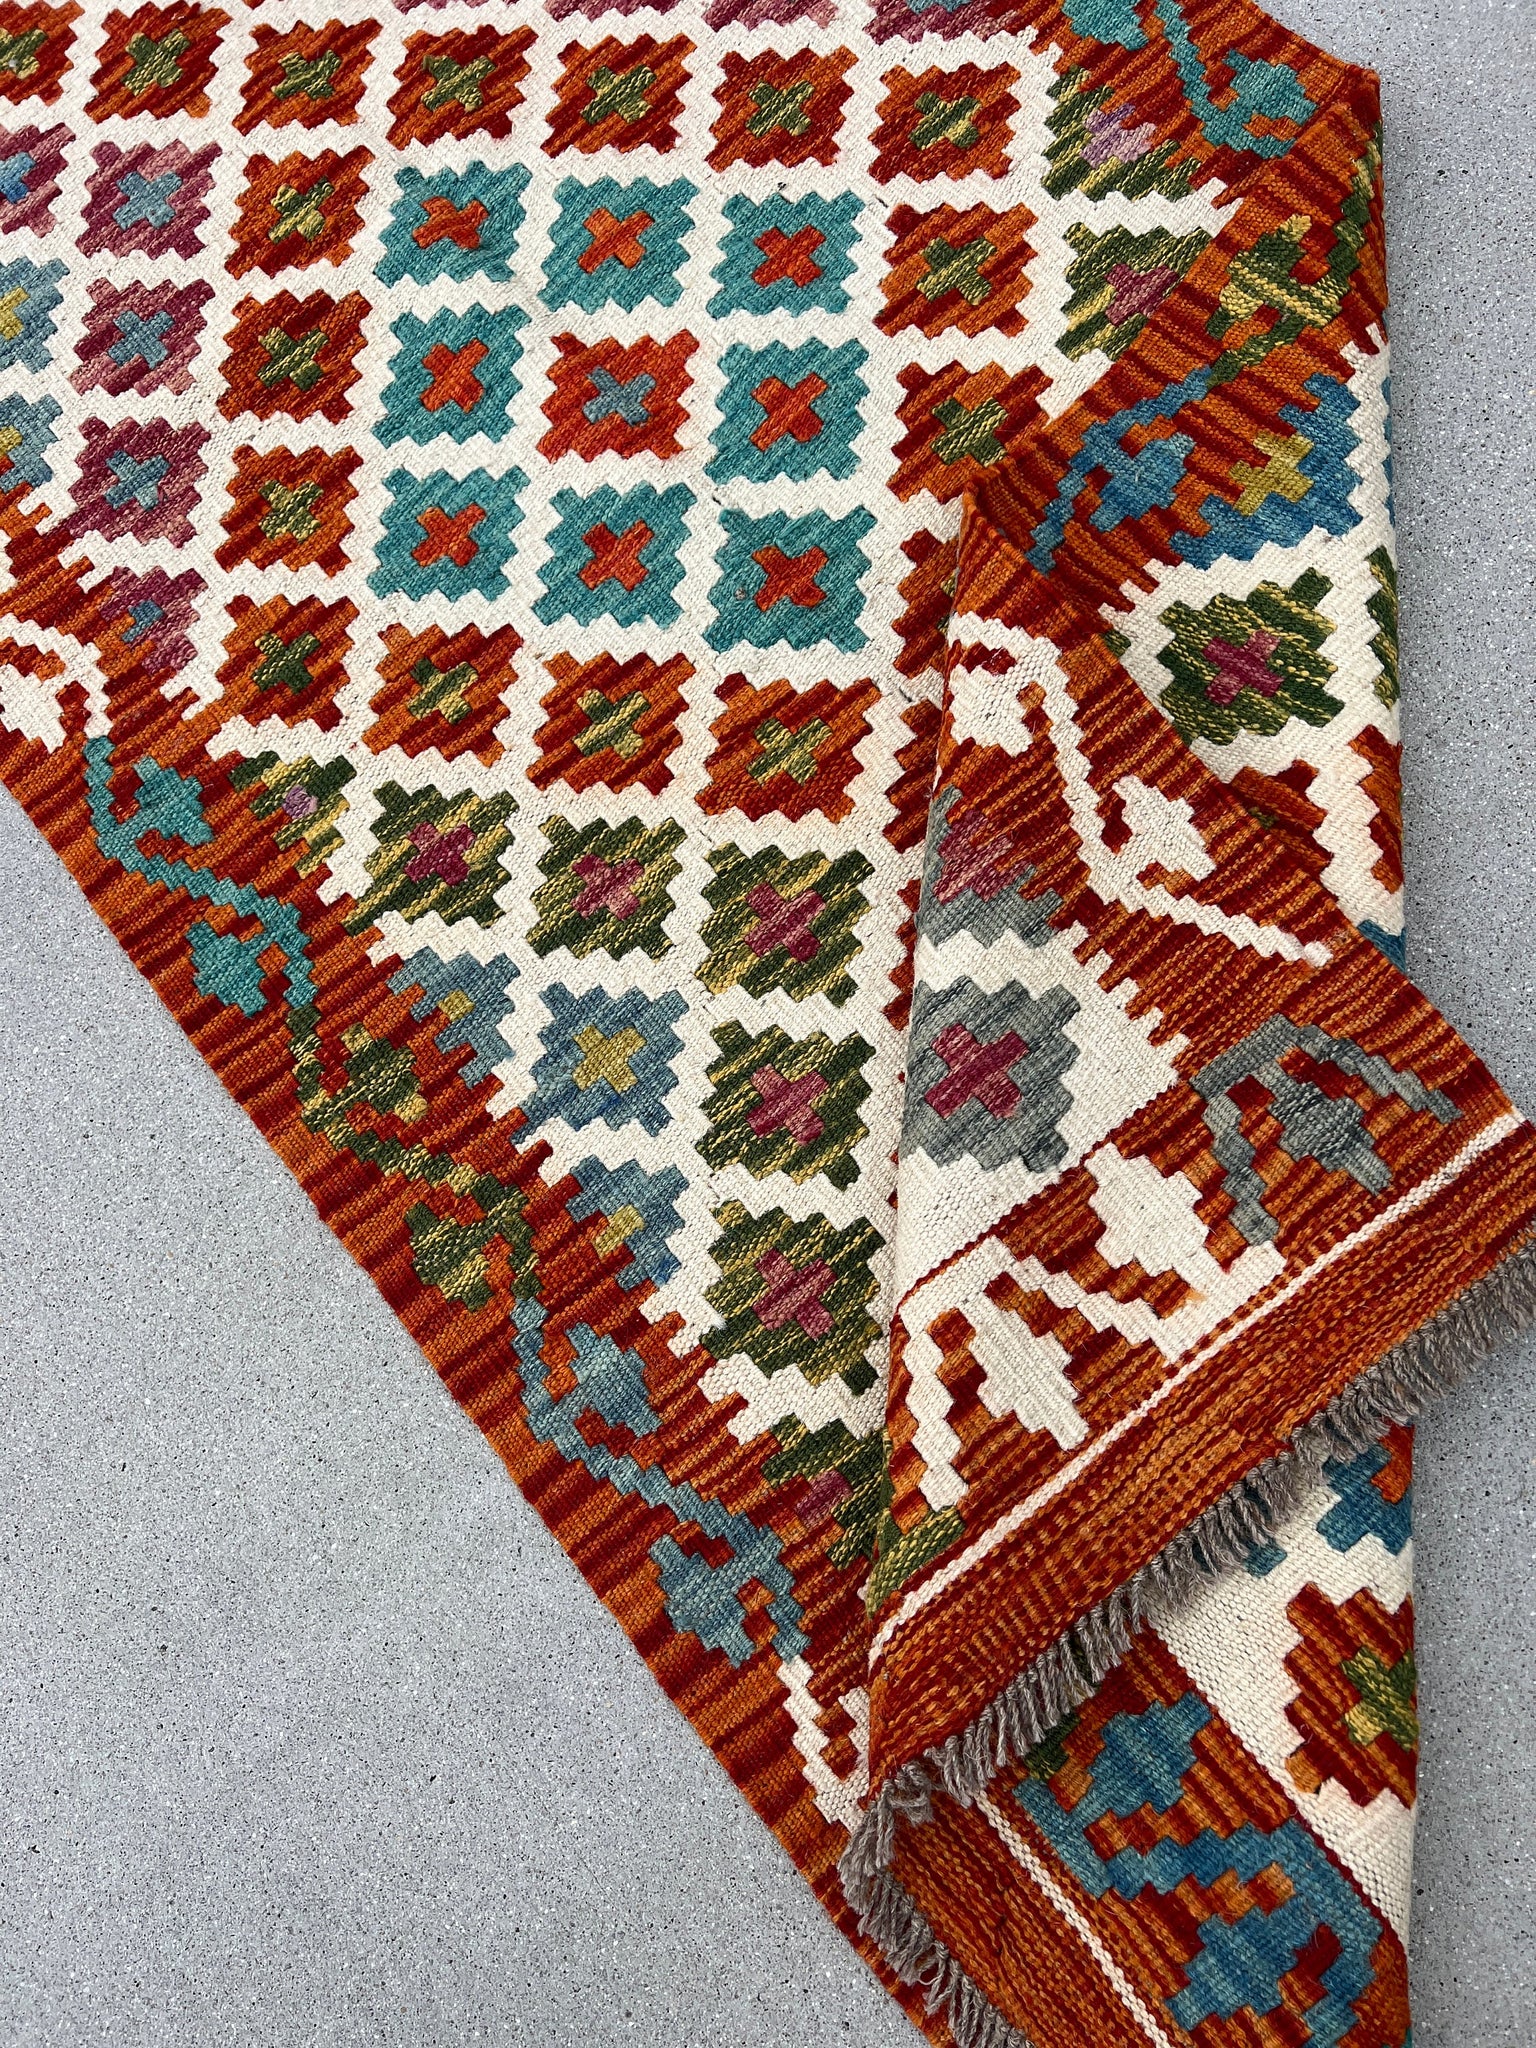 3x8 (90x245) Handmade Afghan Kilim Runner Rug | Burnt Orange Teal Turquoise 0live Green Yellow Ivory Cream Blue | Flatweave Geometric Wool